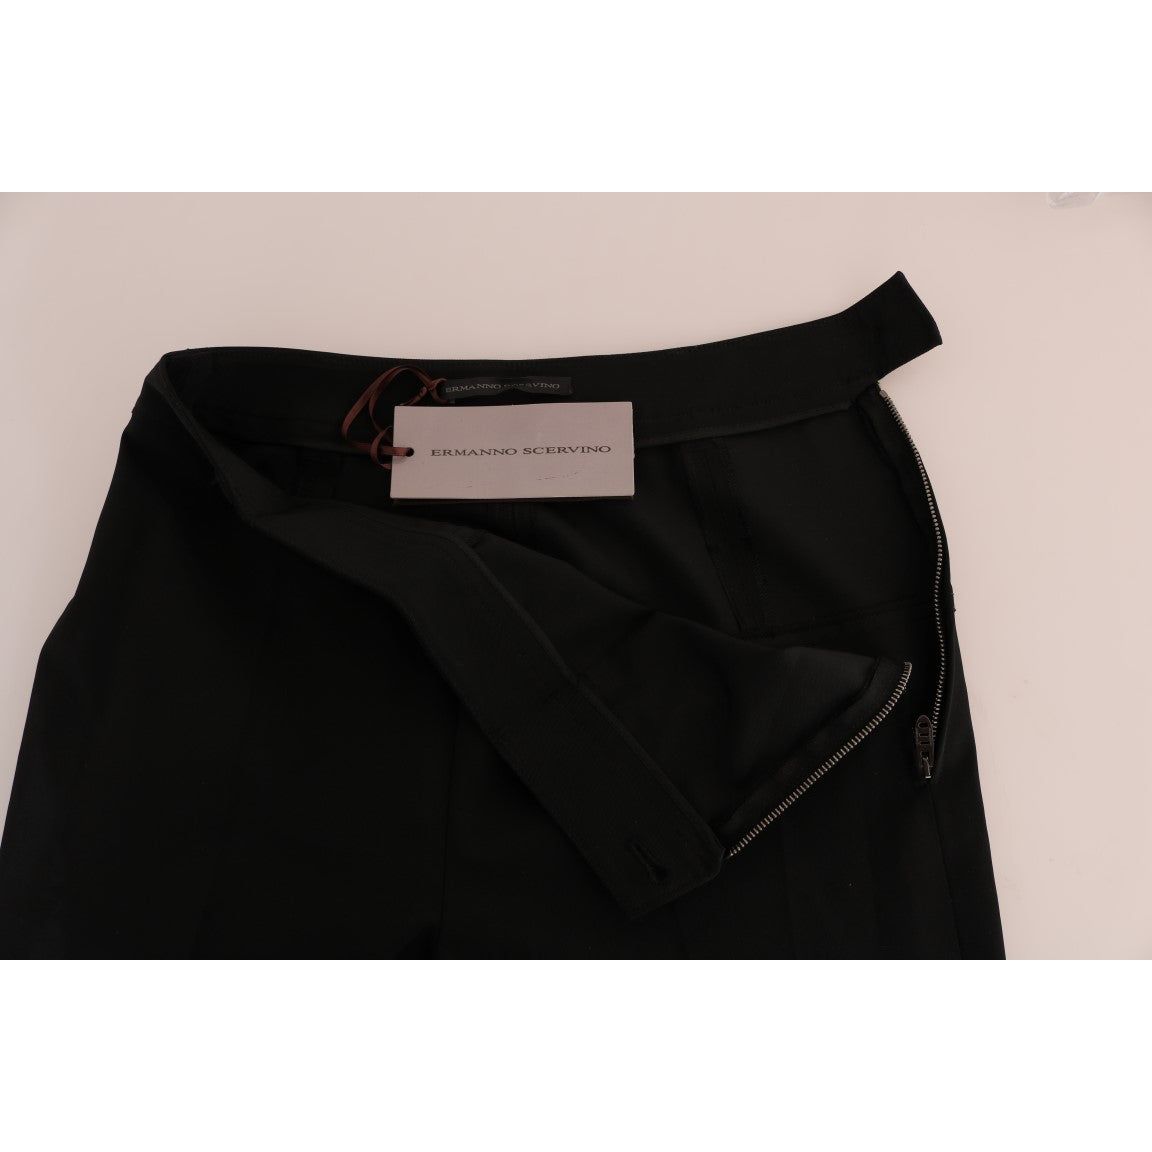 Ermanno Scervino Sleek Black Stirrup Leggings black-stretch-leggings-pants Jeans & Pants 495914-black-stretch-leggings-pants-3.jpg